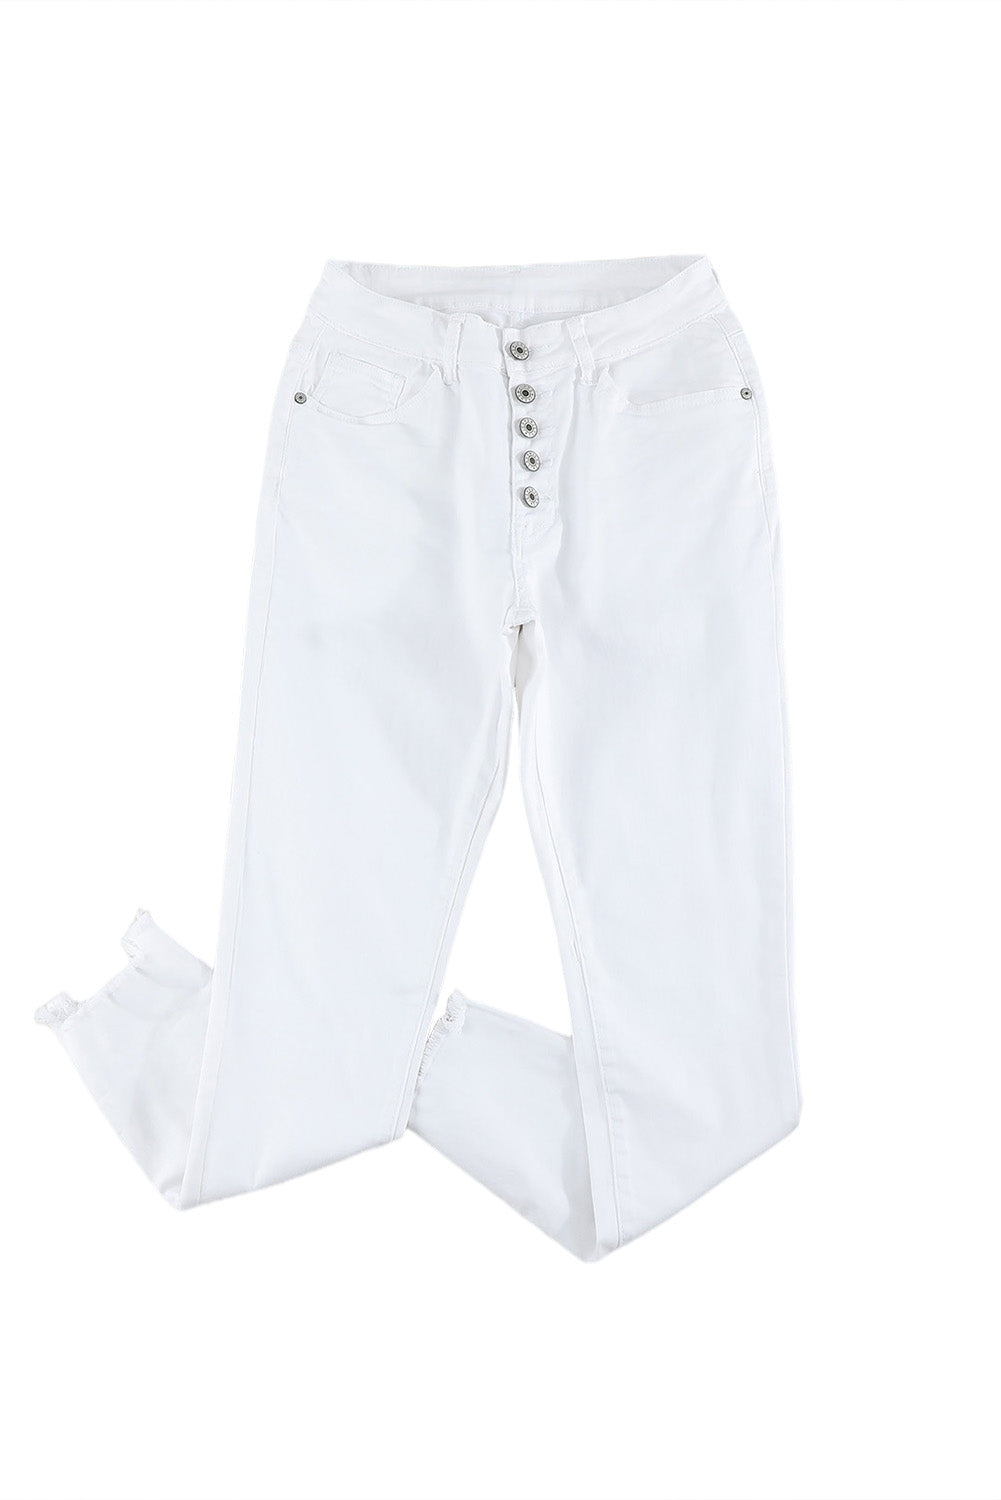 Weiße, schlichte Jeans mit hoher Taille und ausgefransten, verkürzten Jeans